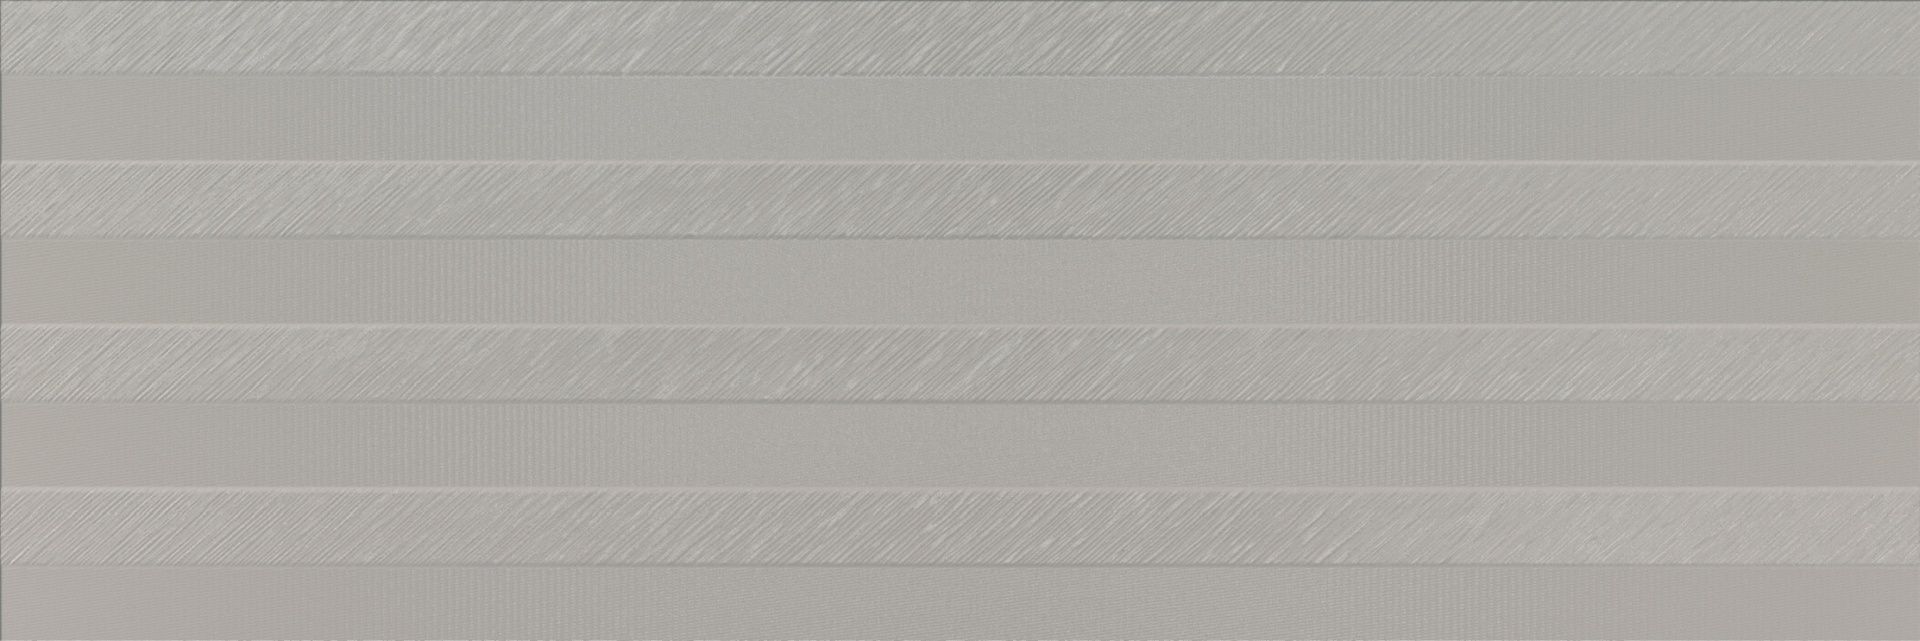 Керамическая плитка Sense Silver Rectificado для стен 40x120